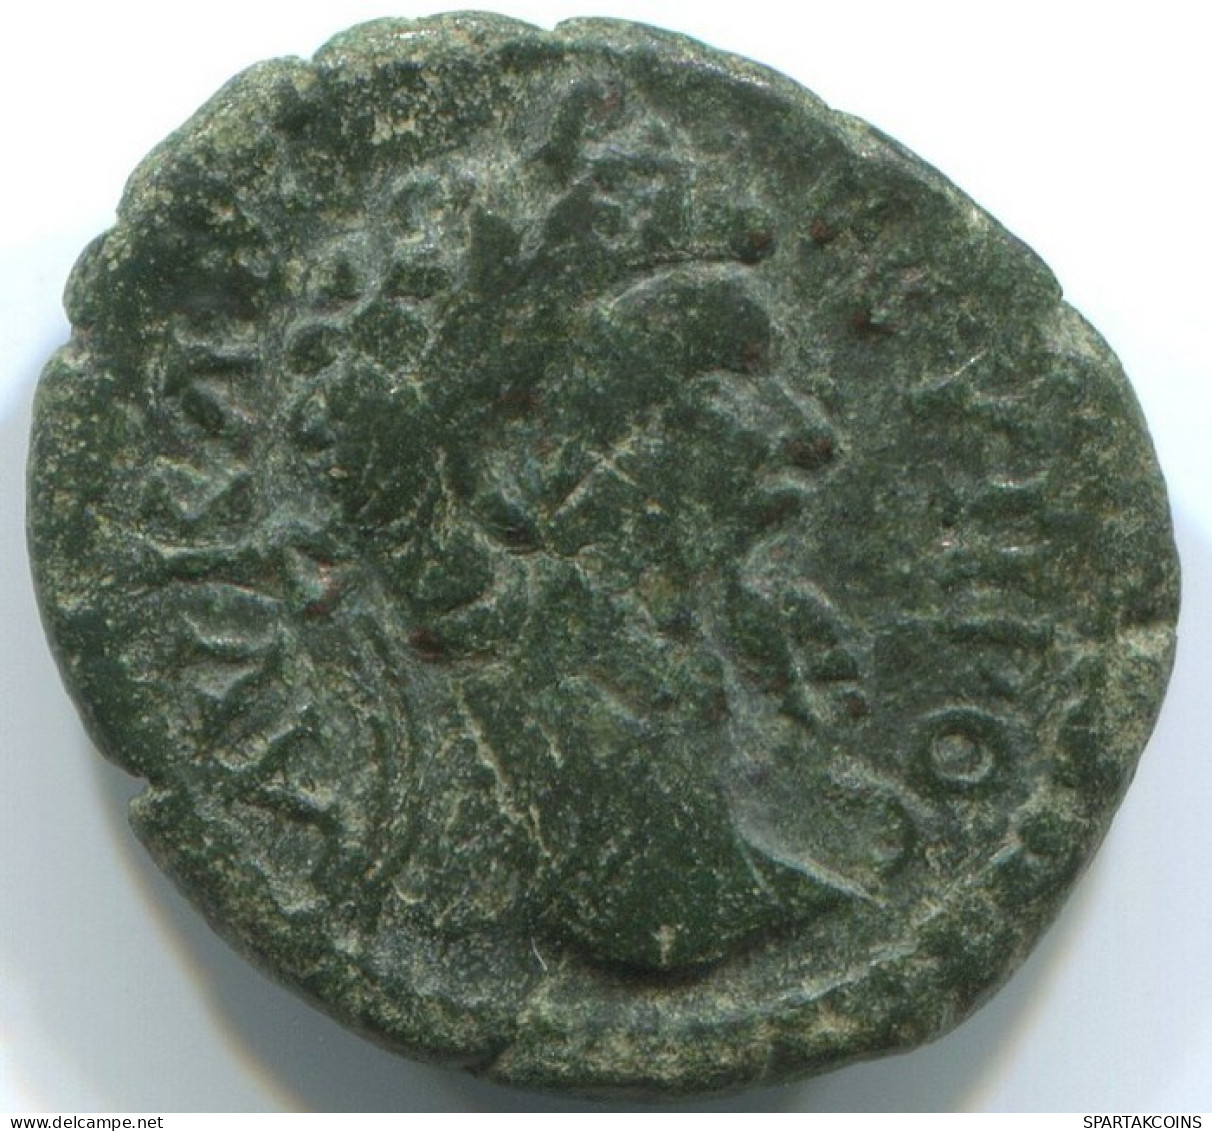 ROMAN PROVINCIAL Authentic Original Ancient Coin 3g/18mm #ANT1330.31.U.A - Röm. Provinz